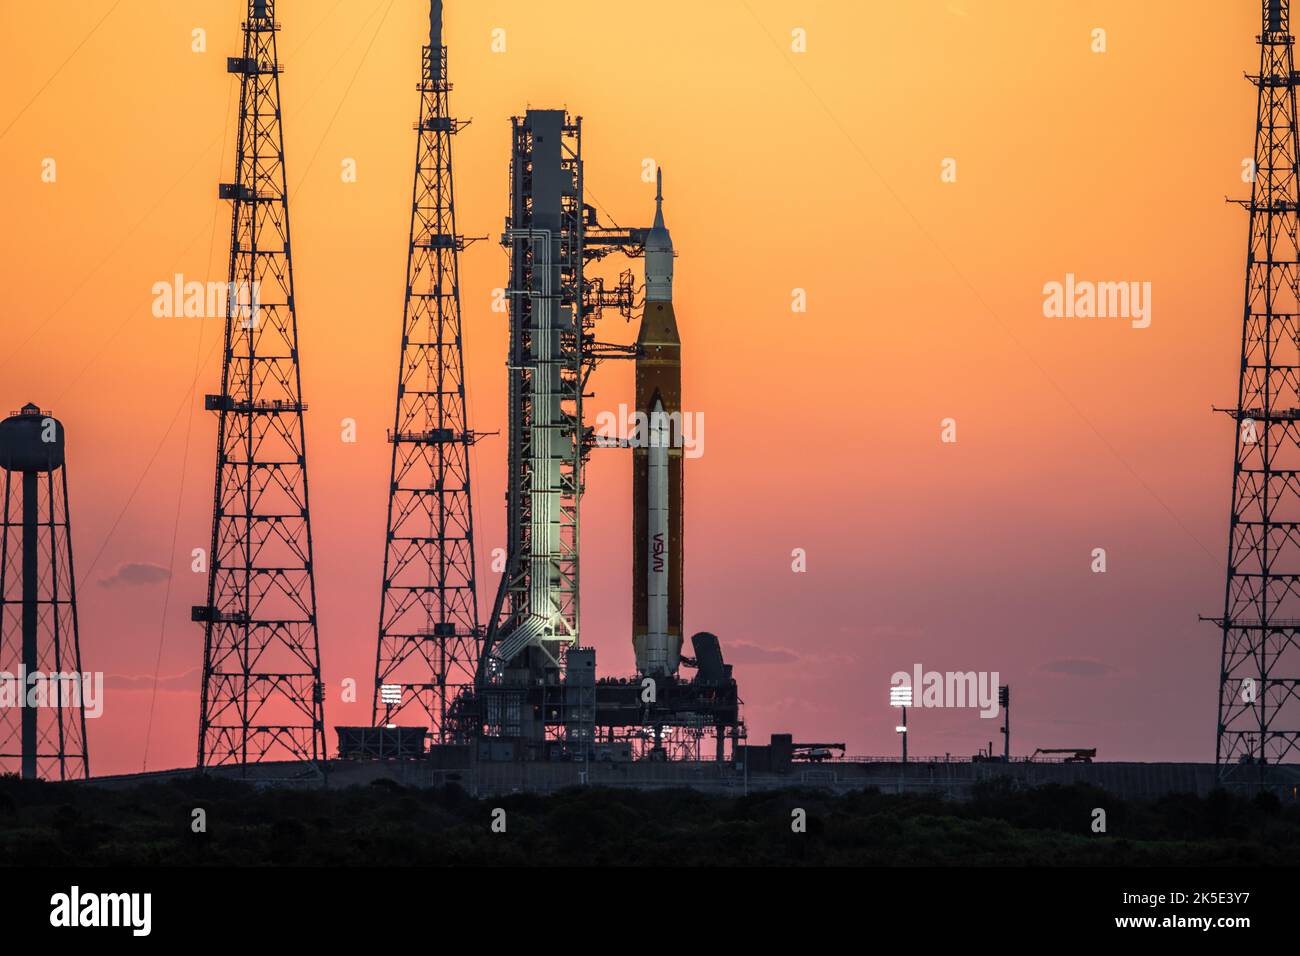 Artemis I en la Pad. Sunrise proyecta un cálido resplandor alrededor del Sistema de Lanzamiento Espacial Artemis I (SLS) y la nave espacial Orion en Launch Pad 39B en el Centro Espacial Kennedy de la NASA en Florida el 21 de marzo de 2022. El SLS y Orion encima del lanzador móvil fueron transportados a la plataforma en Crawler-Transporter 2 para una prueba de prelanzamiento llamada ensayo de vestido mojado. Artemis I será la primera prueba integrada de la nave espacial SLS y Orion. Crédito de la imagen: NASA/BSmegelsky Foto de stock